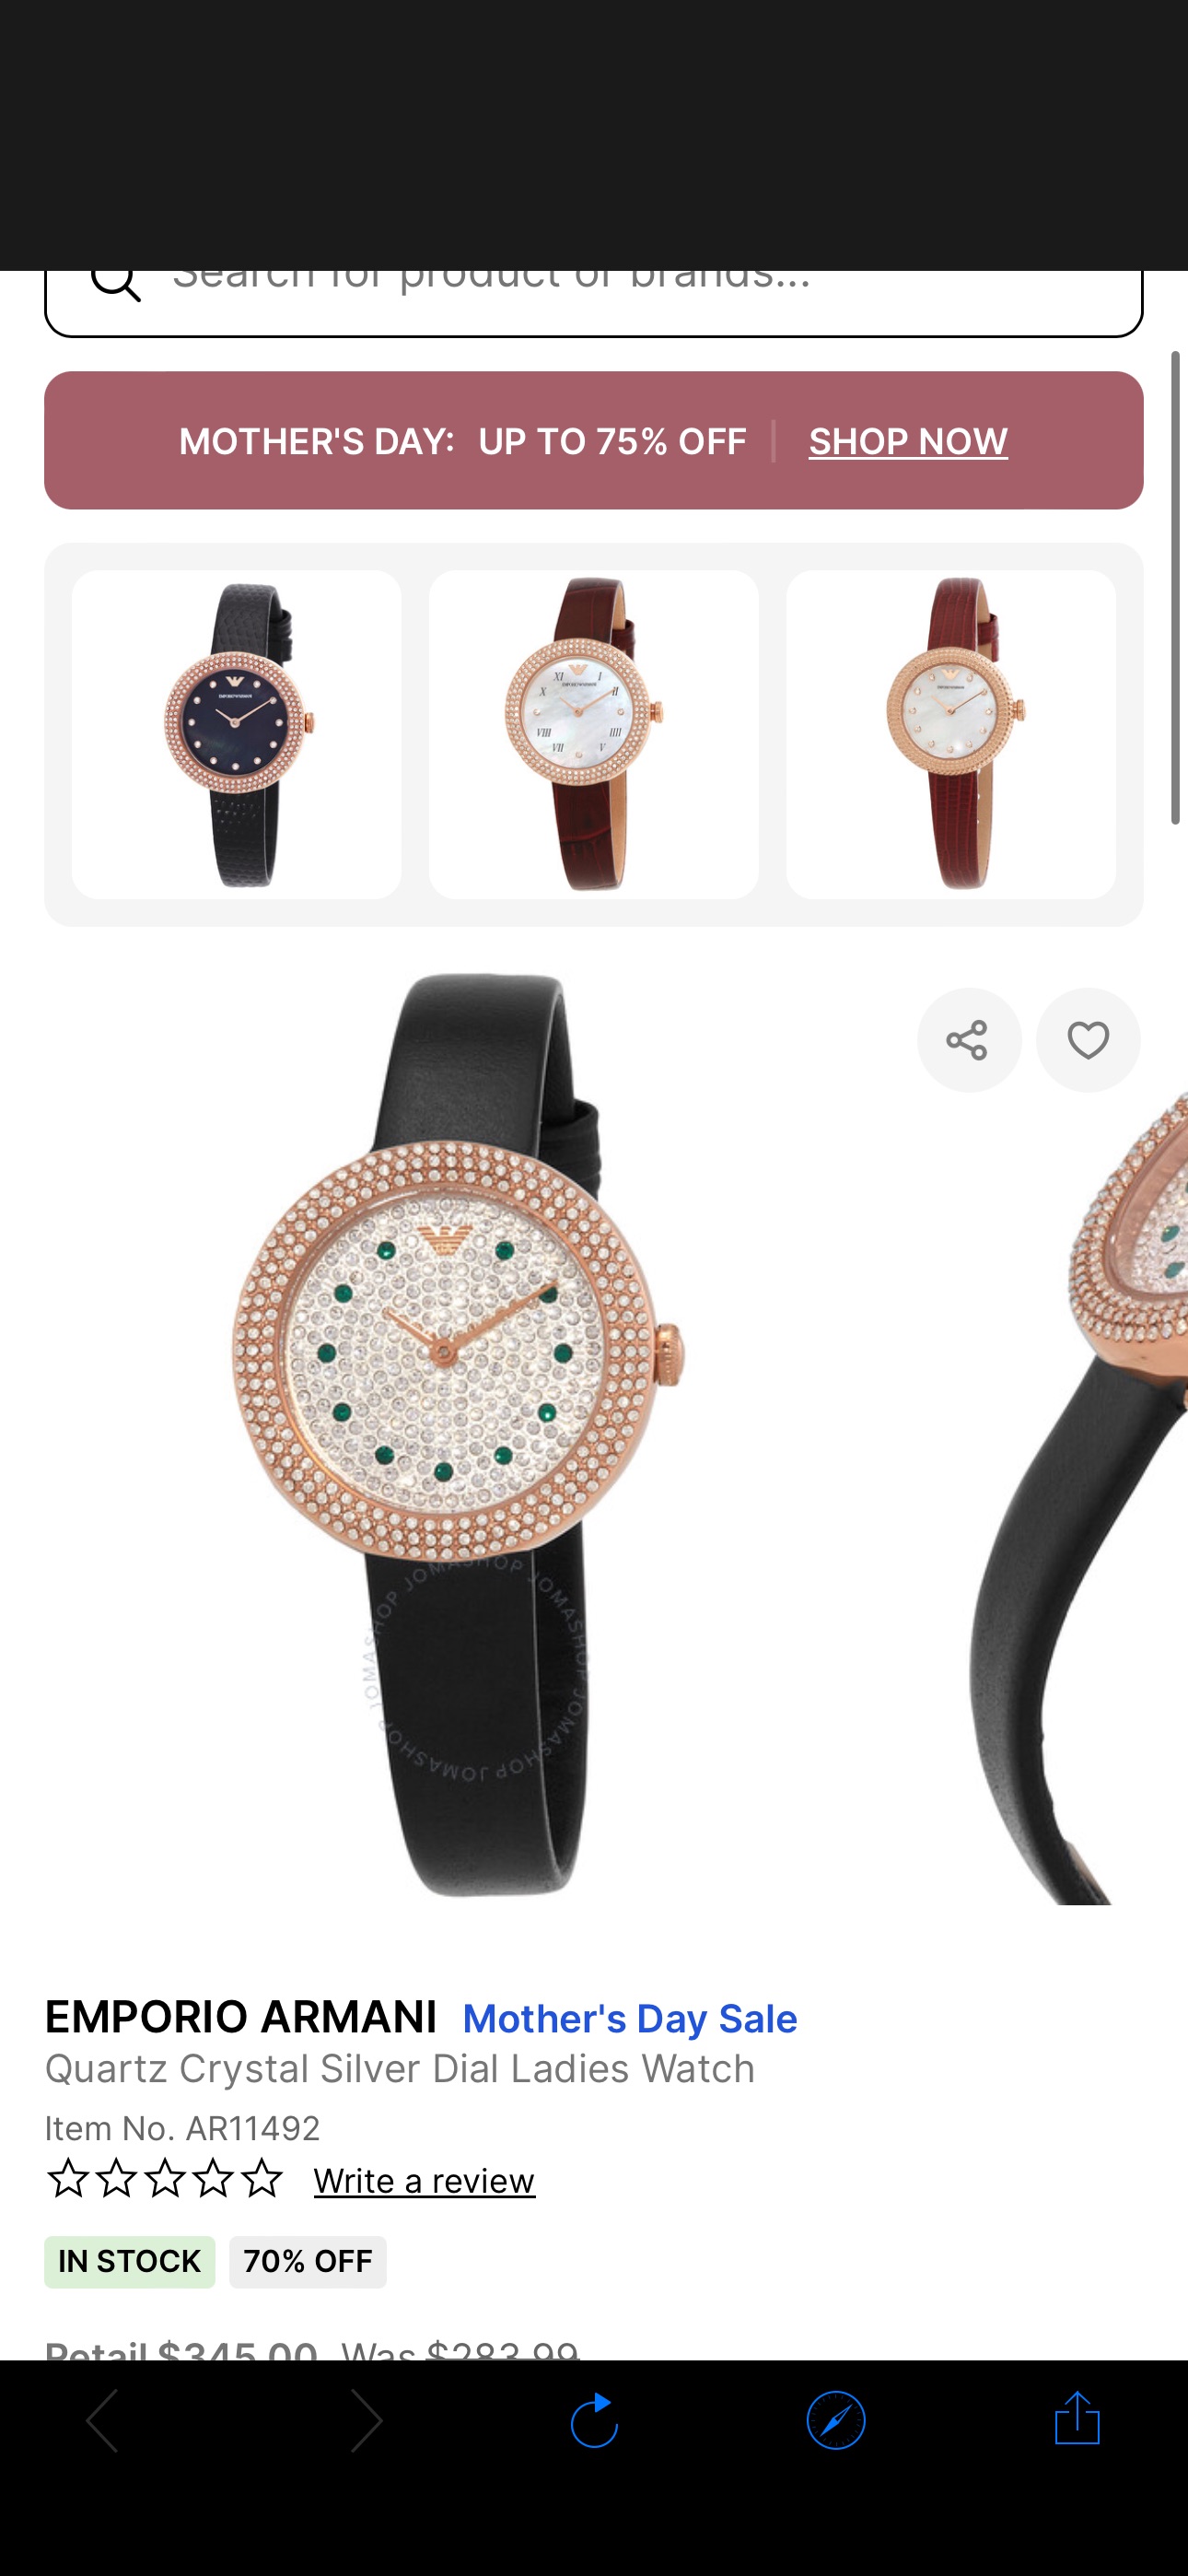 Emporio Armani Quartz Crystal Silver Dial Ladies Watch AR11492 723763307352 - Watches - Jomashop